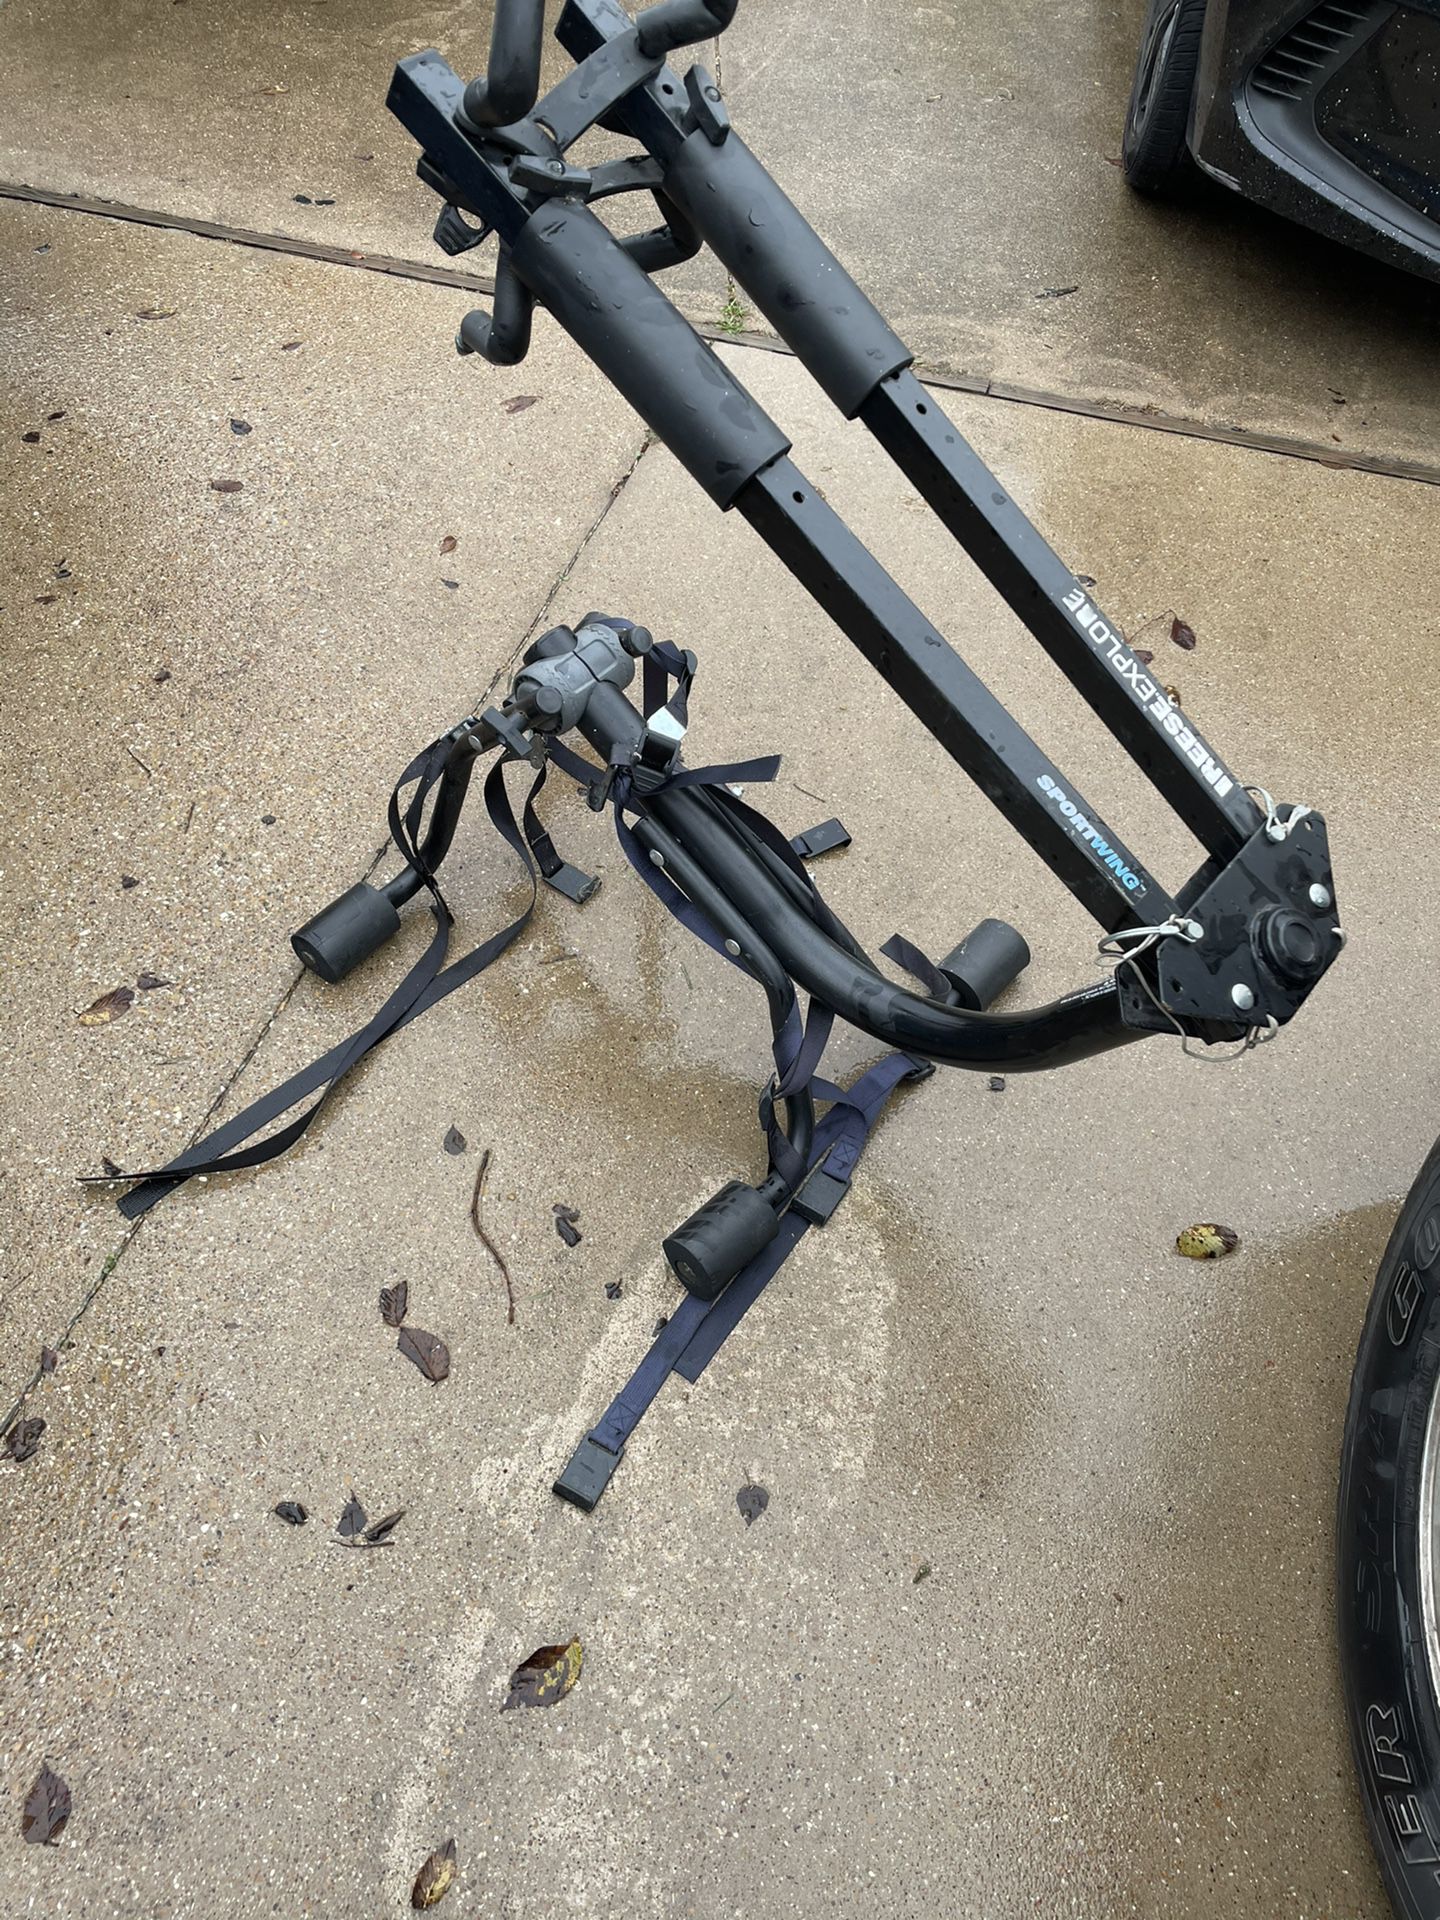 Trunk mounted bike rack